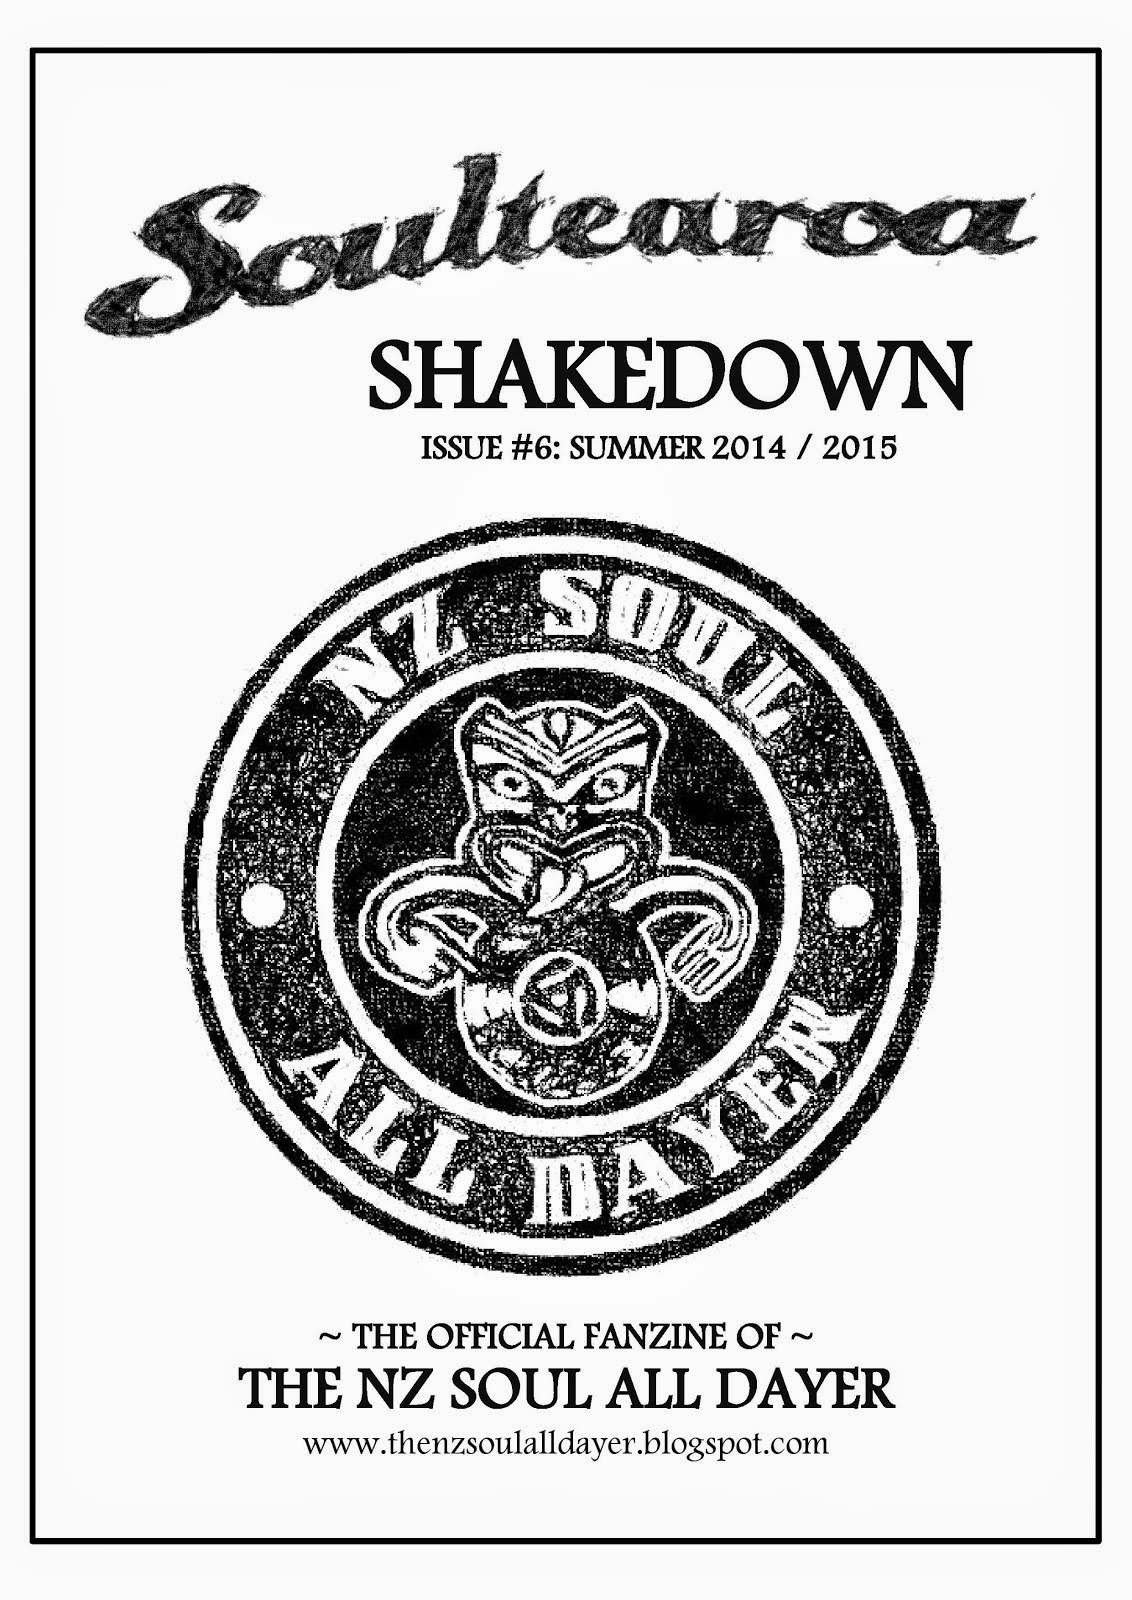 Soultearoa Shakedown fanzine